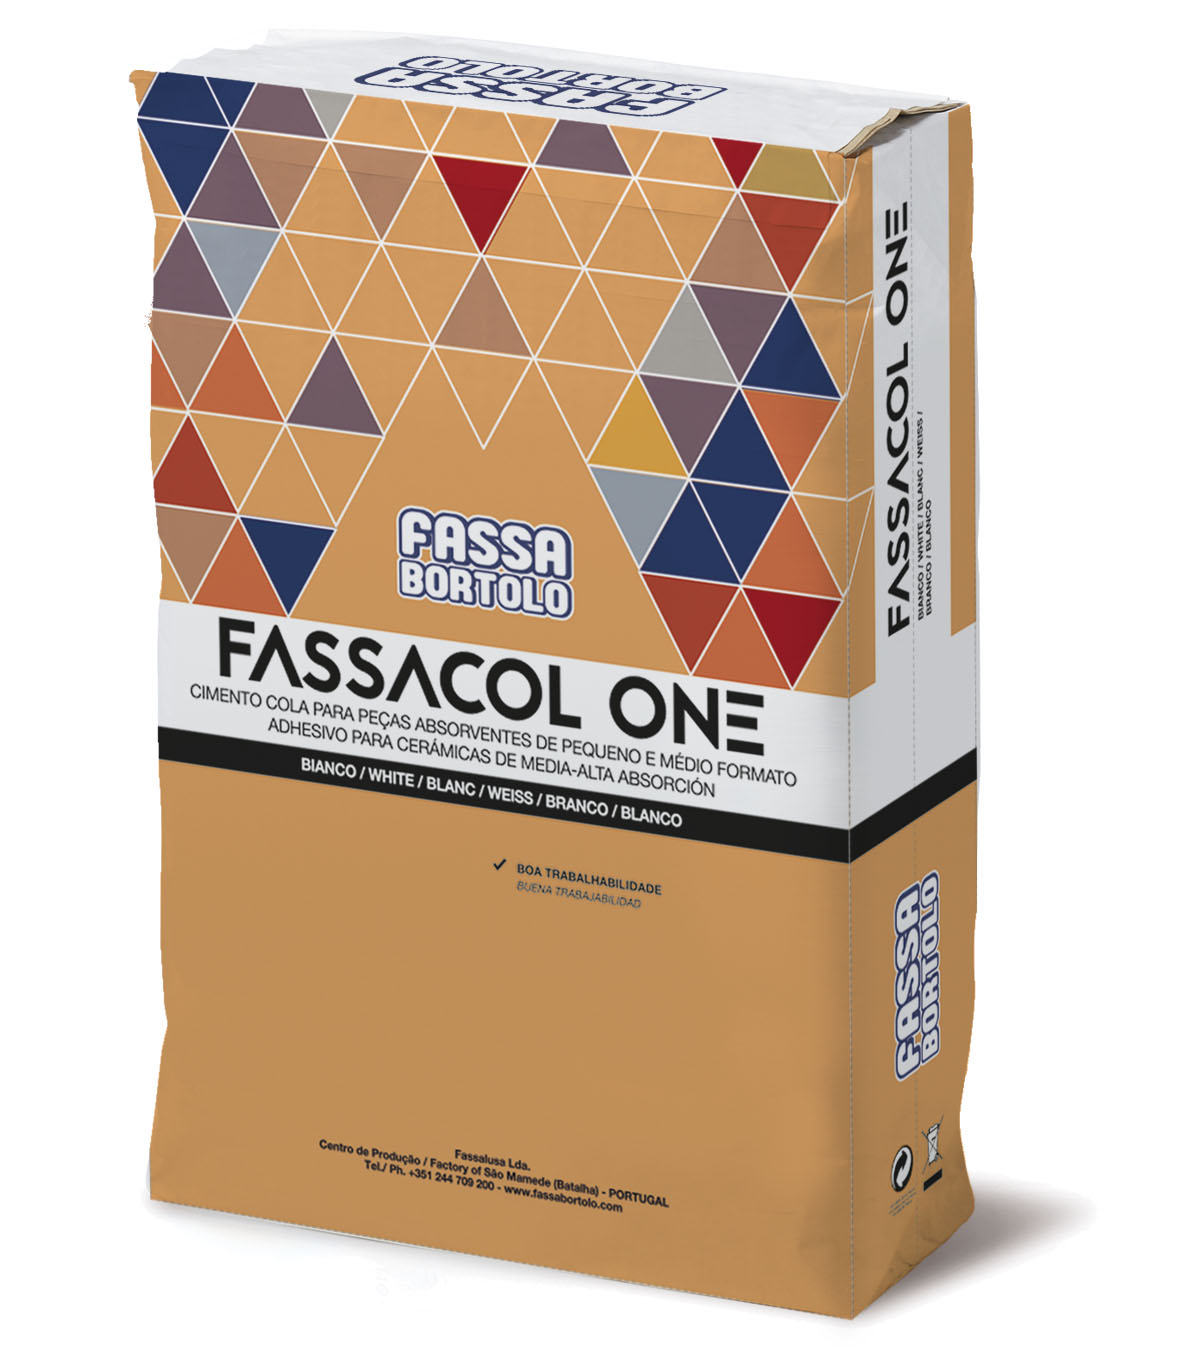 FASSACOL ONE: Adhesivo blanco y gris para encolar baldosas absorbentes en suelos y revestimientos en interiores